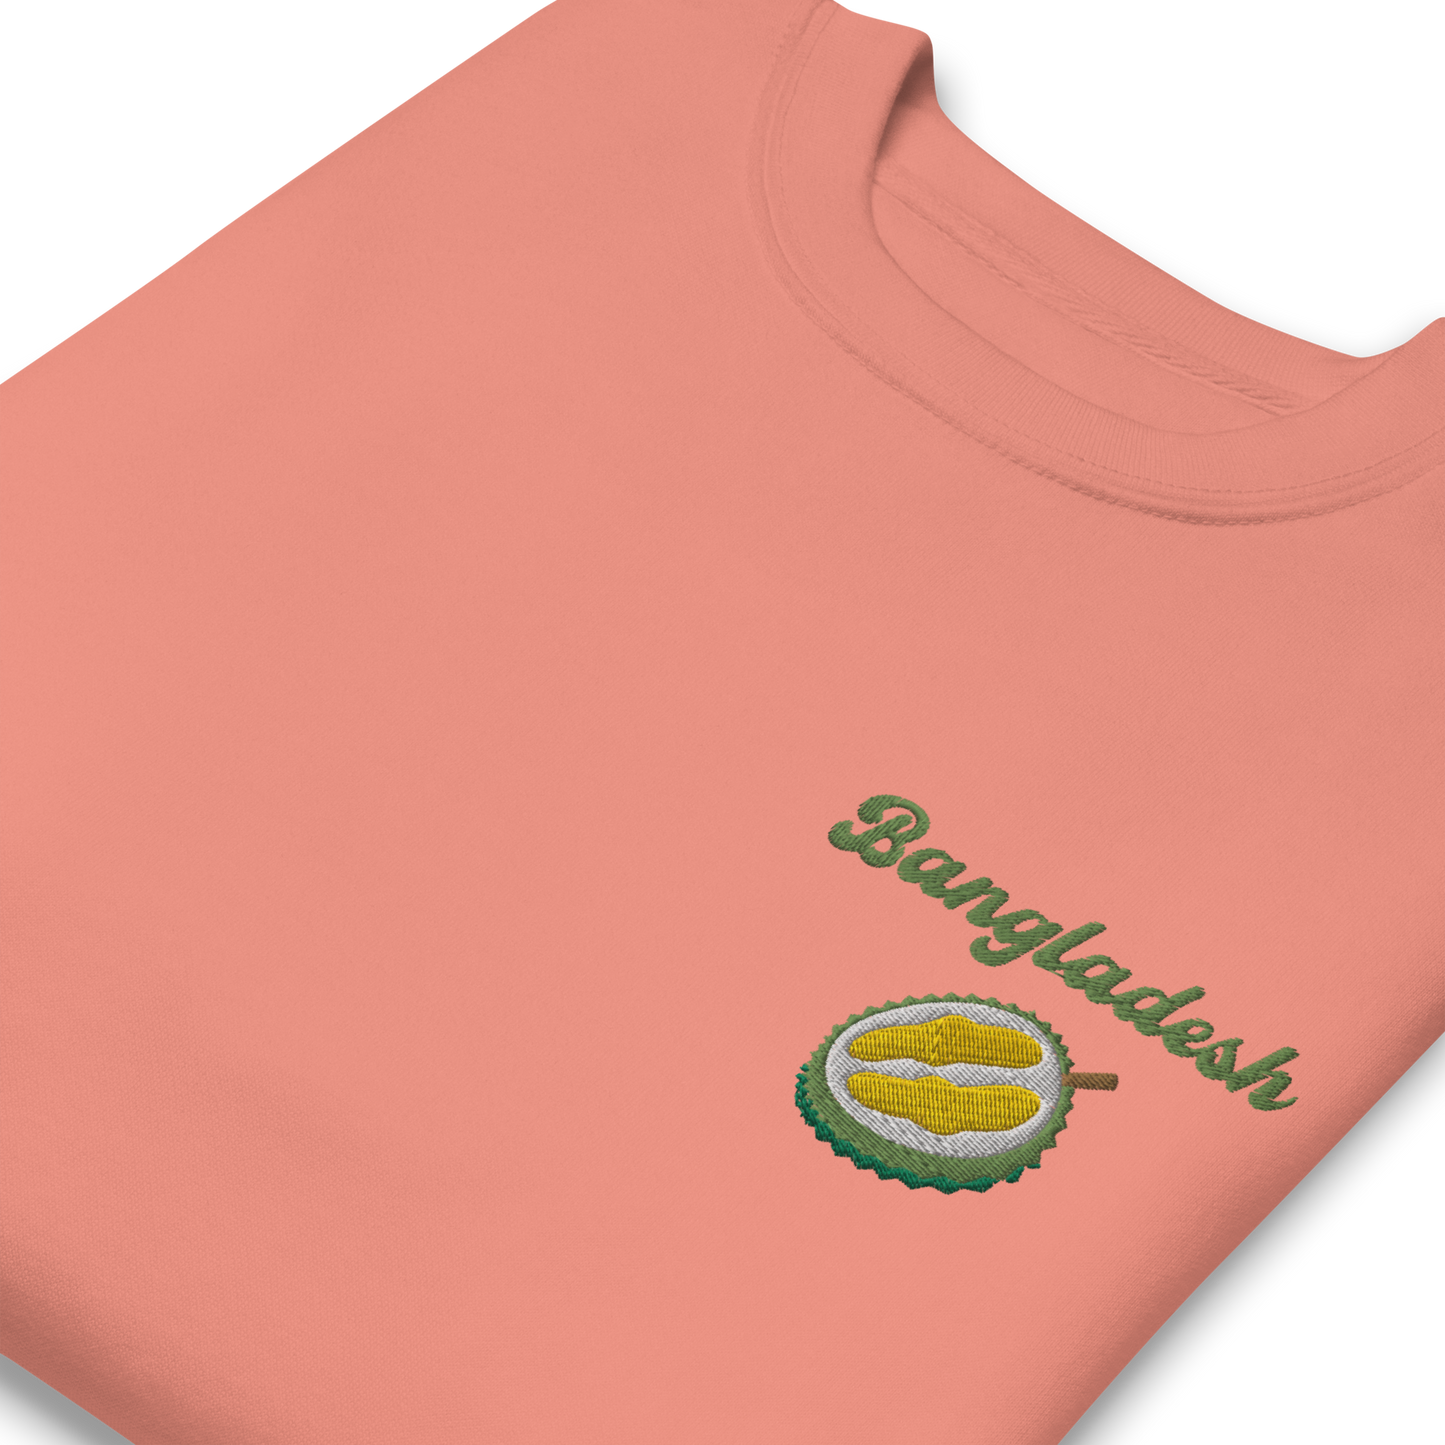 Bangladesh Jackfruit Embroidered Unisex Sweatshirt